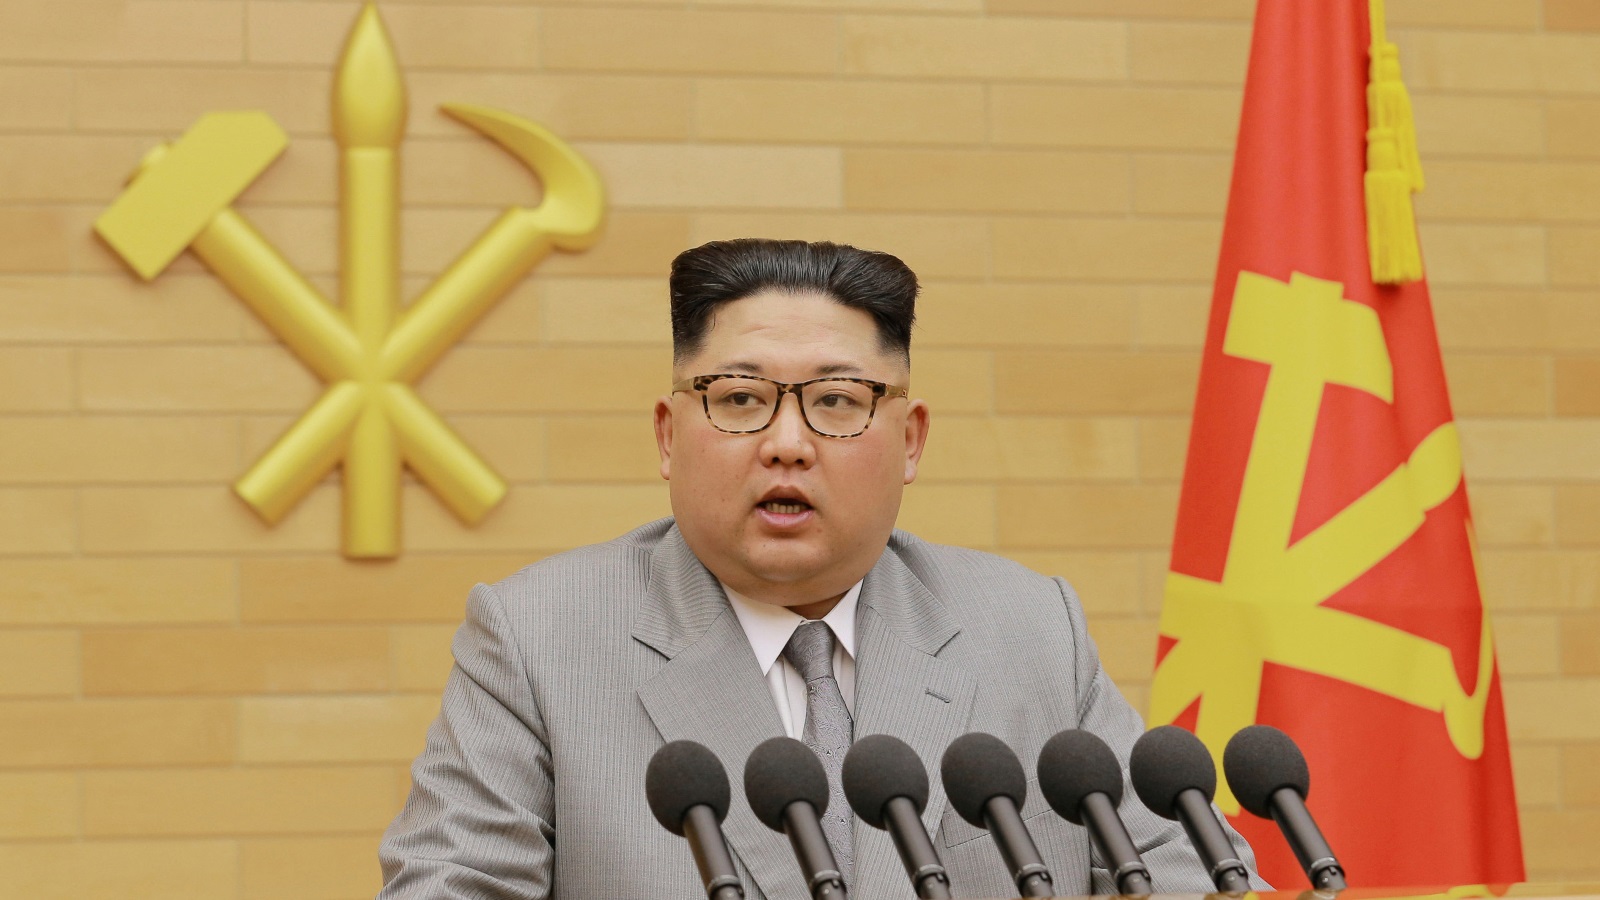 زعيم كوريا الشمالية تمنى في رسالته قبيل رأس السنة الجديدة أن تكلل الألعاب الشتوية في كوريا الجنوبية بالنجاح (رويترز)